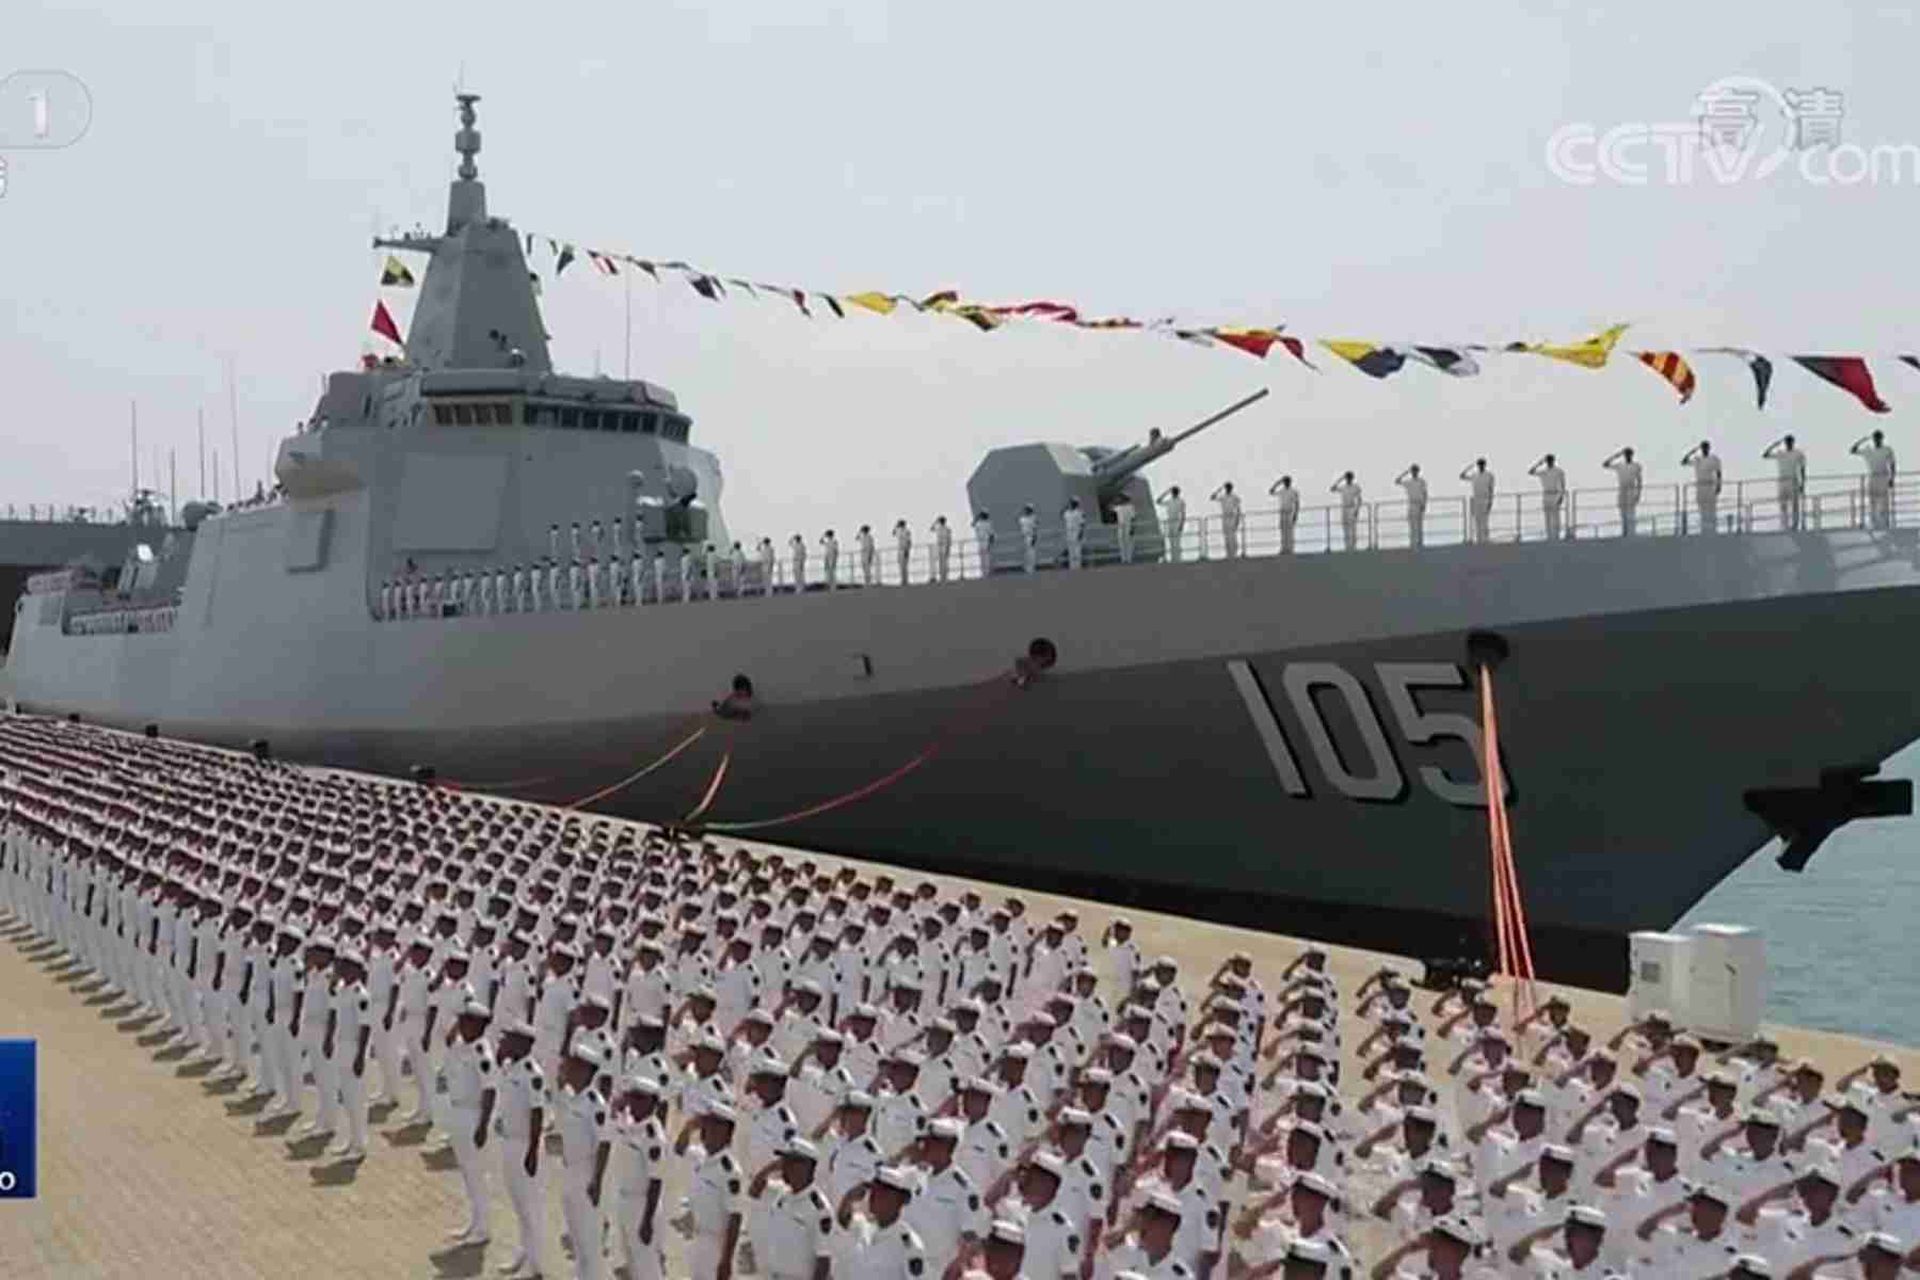 中国央视新闻公开入列现场画面。图为中国海军官兵在大连舰前列队。（中国央视截图）